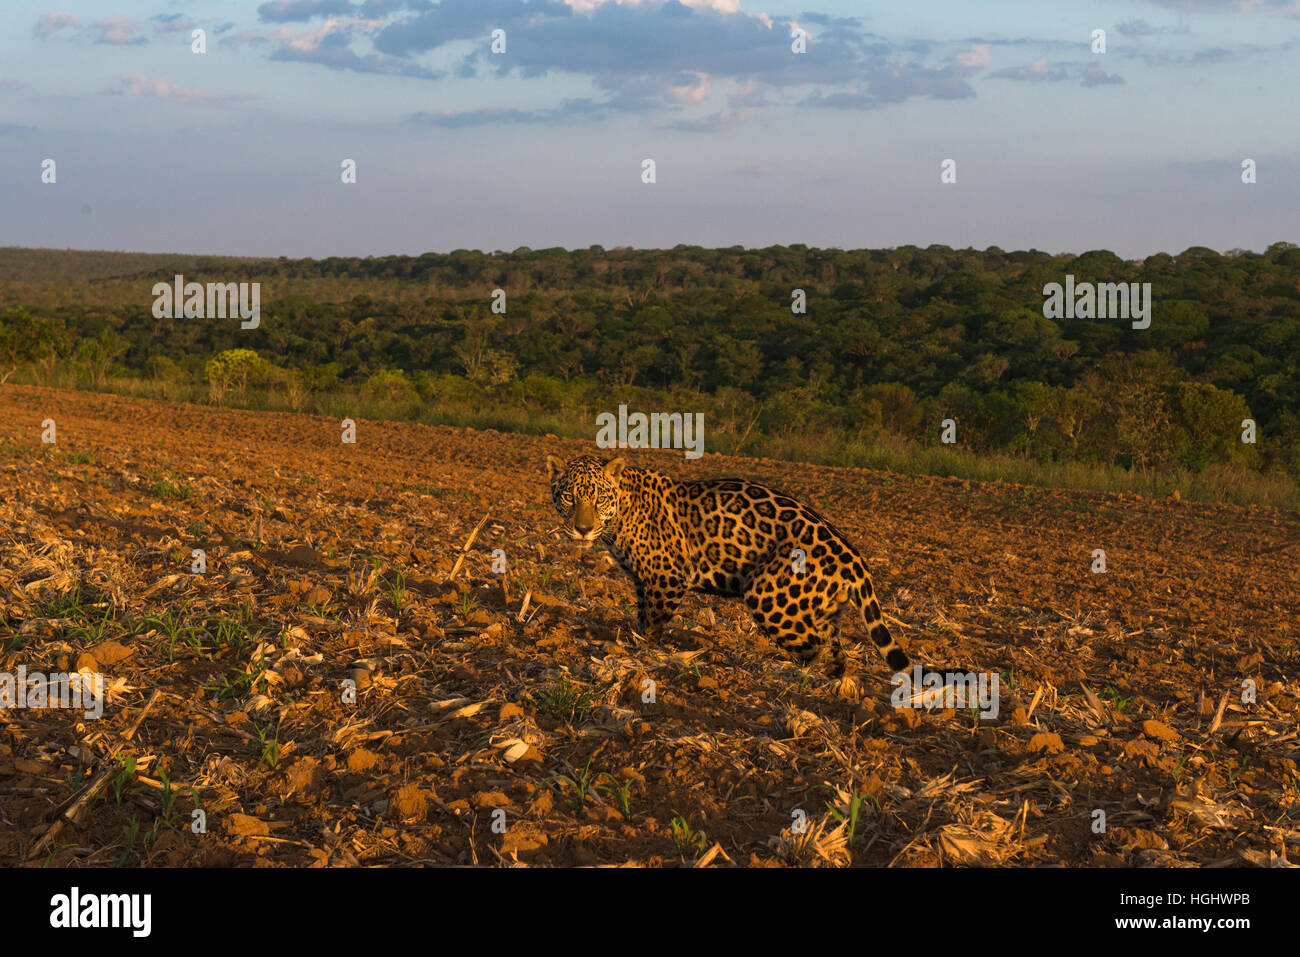 A Jaguar exploring a crop field at sunset. Stock Photo